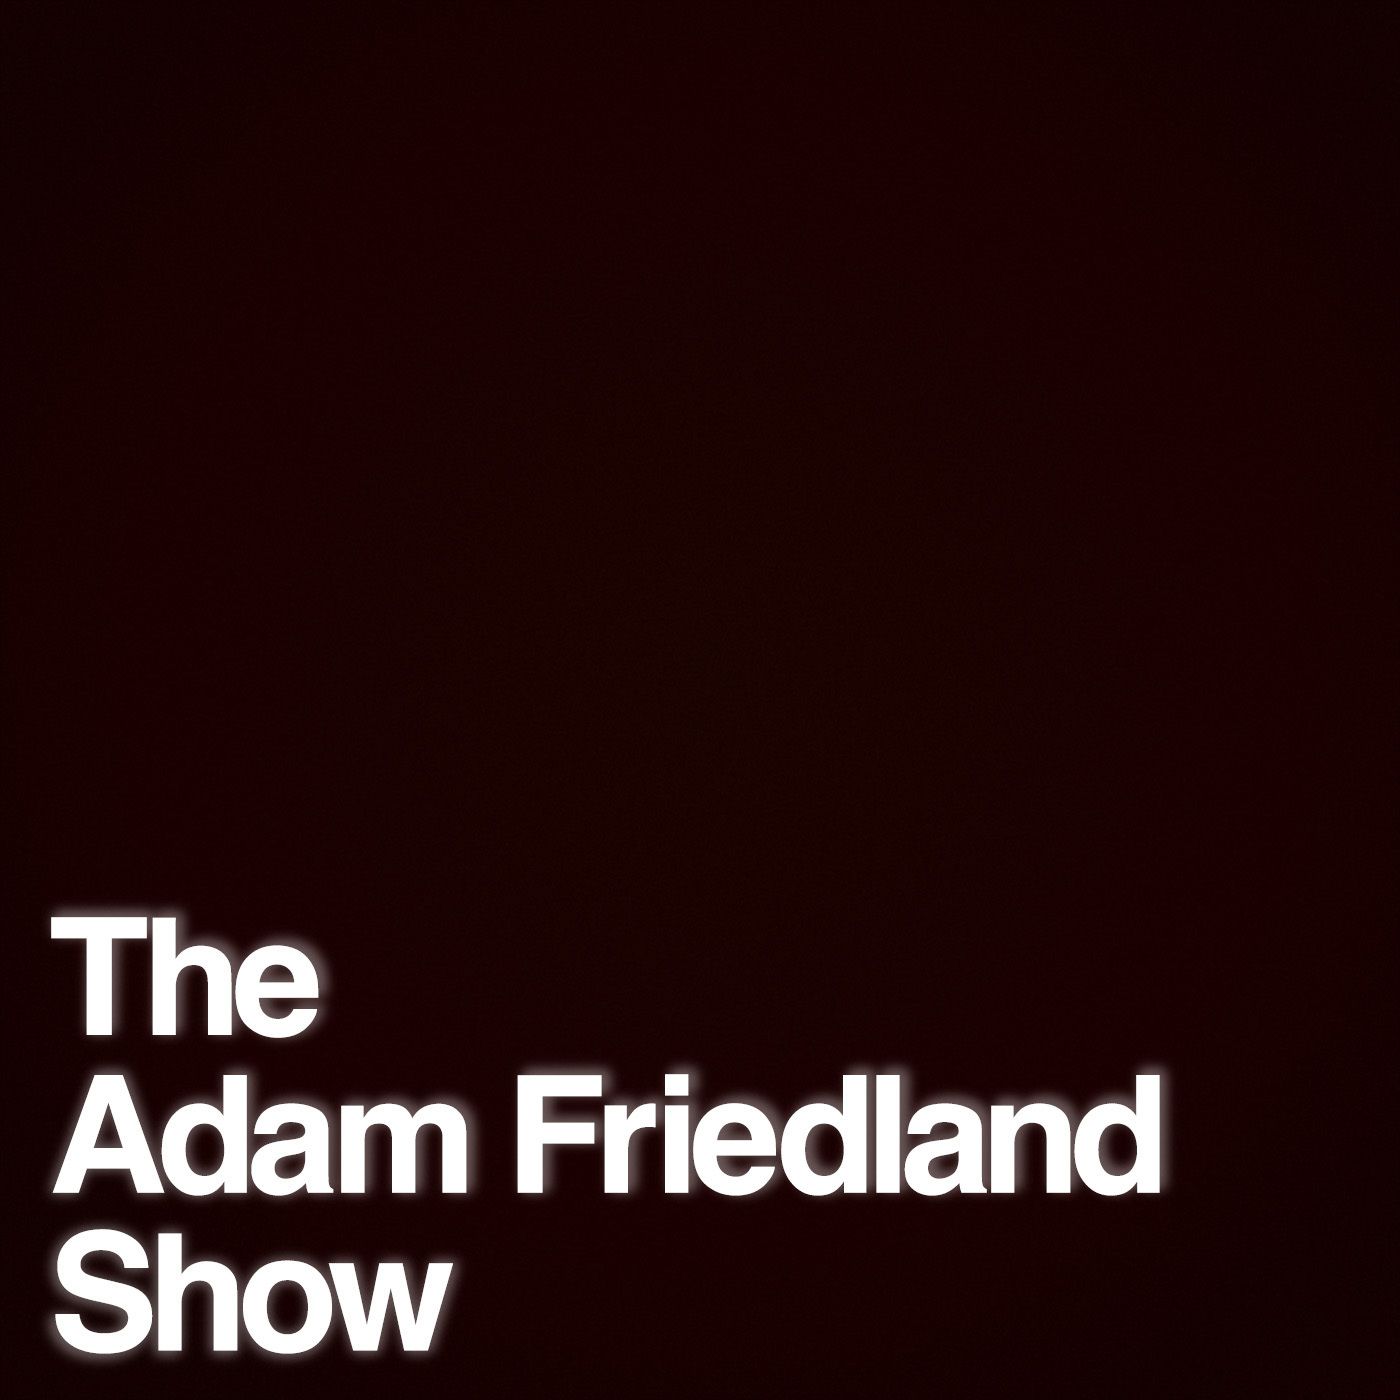 The Adam Friedland Show Podcast - Episode 15